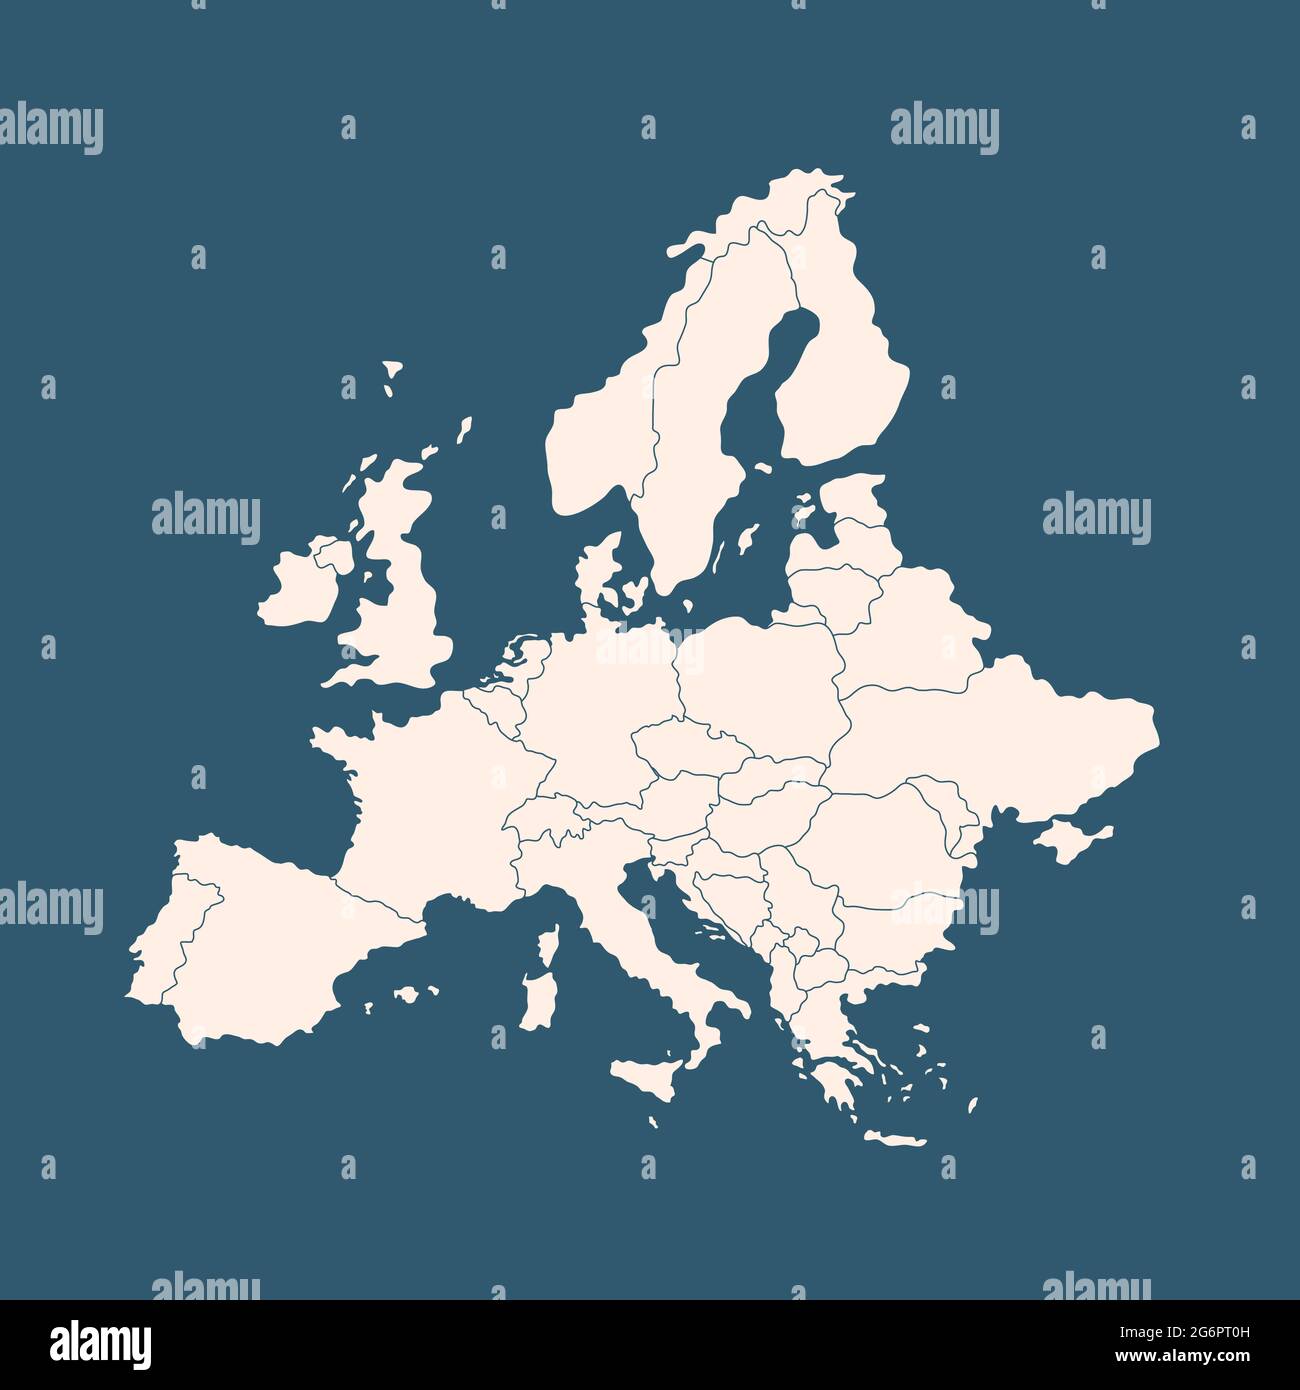 https://c8.alamy.com/compes/2g6pt0h/mapa-de-alta-calidad-de-europa-con-fronteras-de-regiones-2g6pt0h.jpg